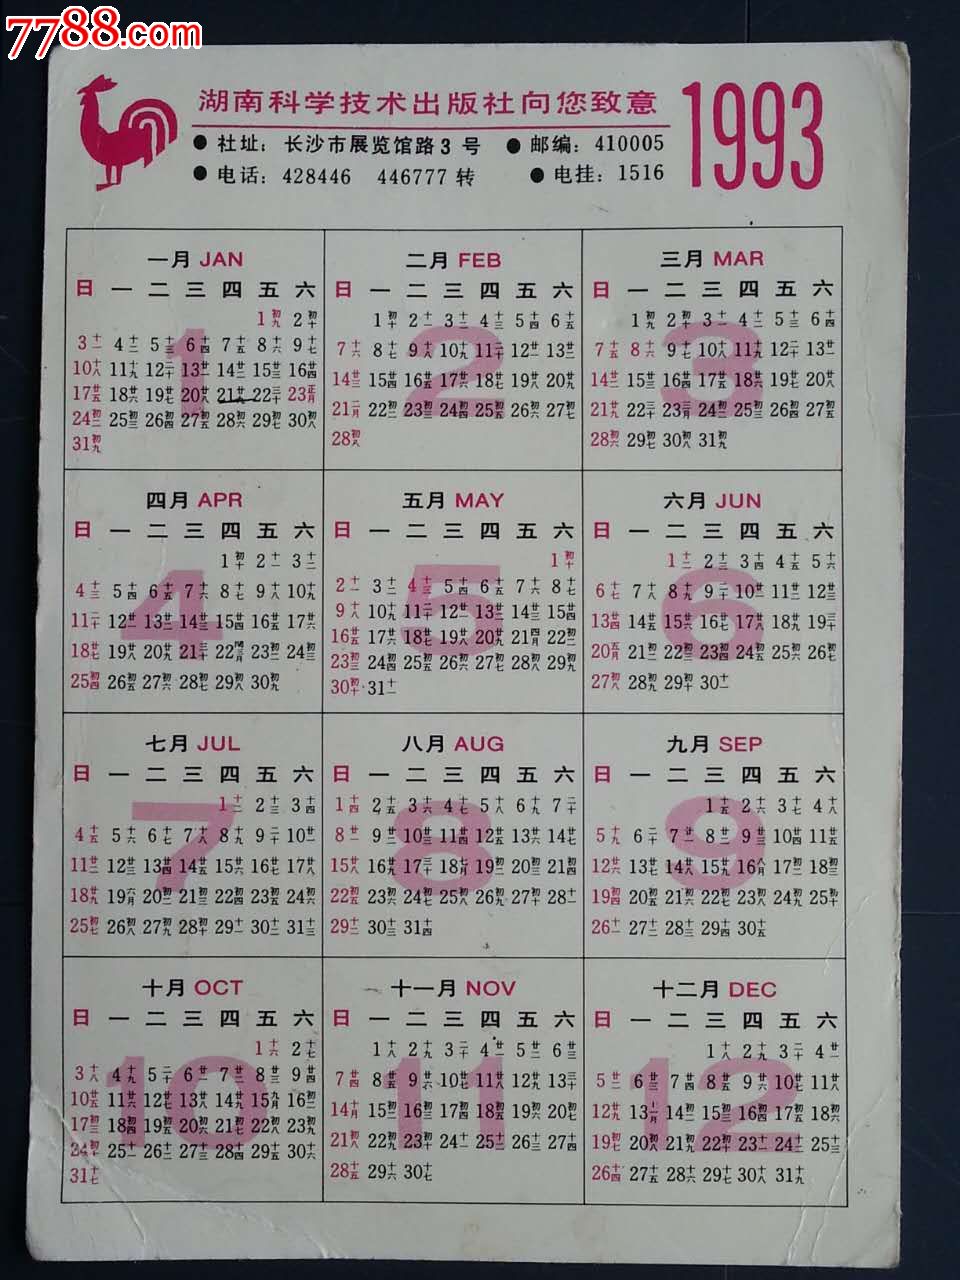 1993年年历片-价格:5.0000元-se37163607-年历卡/片